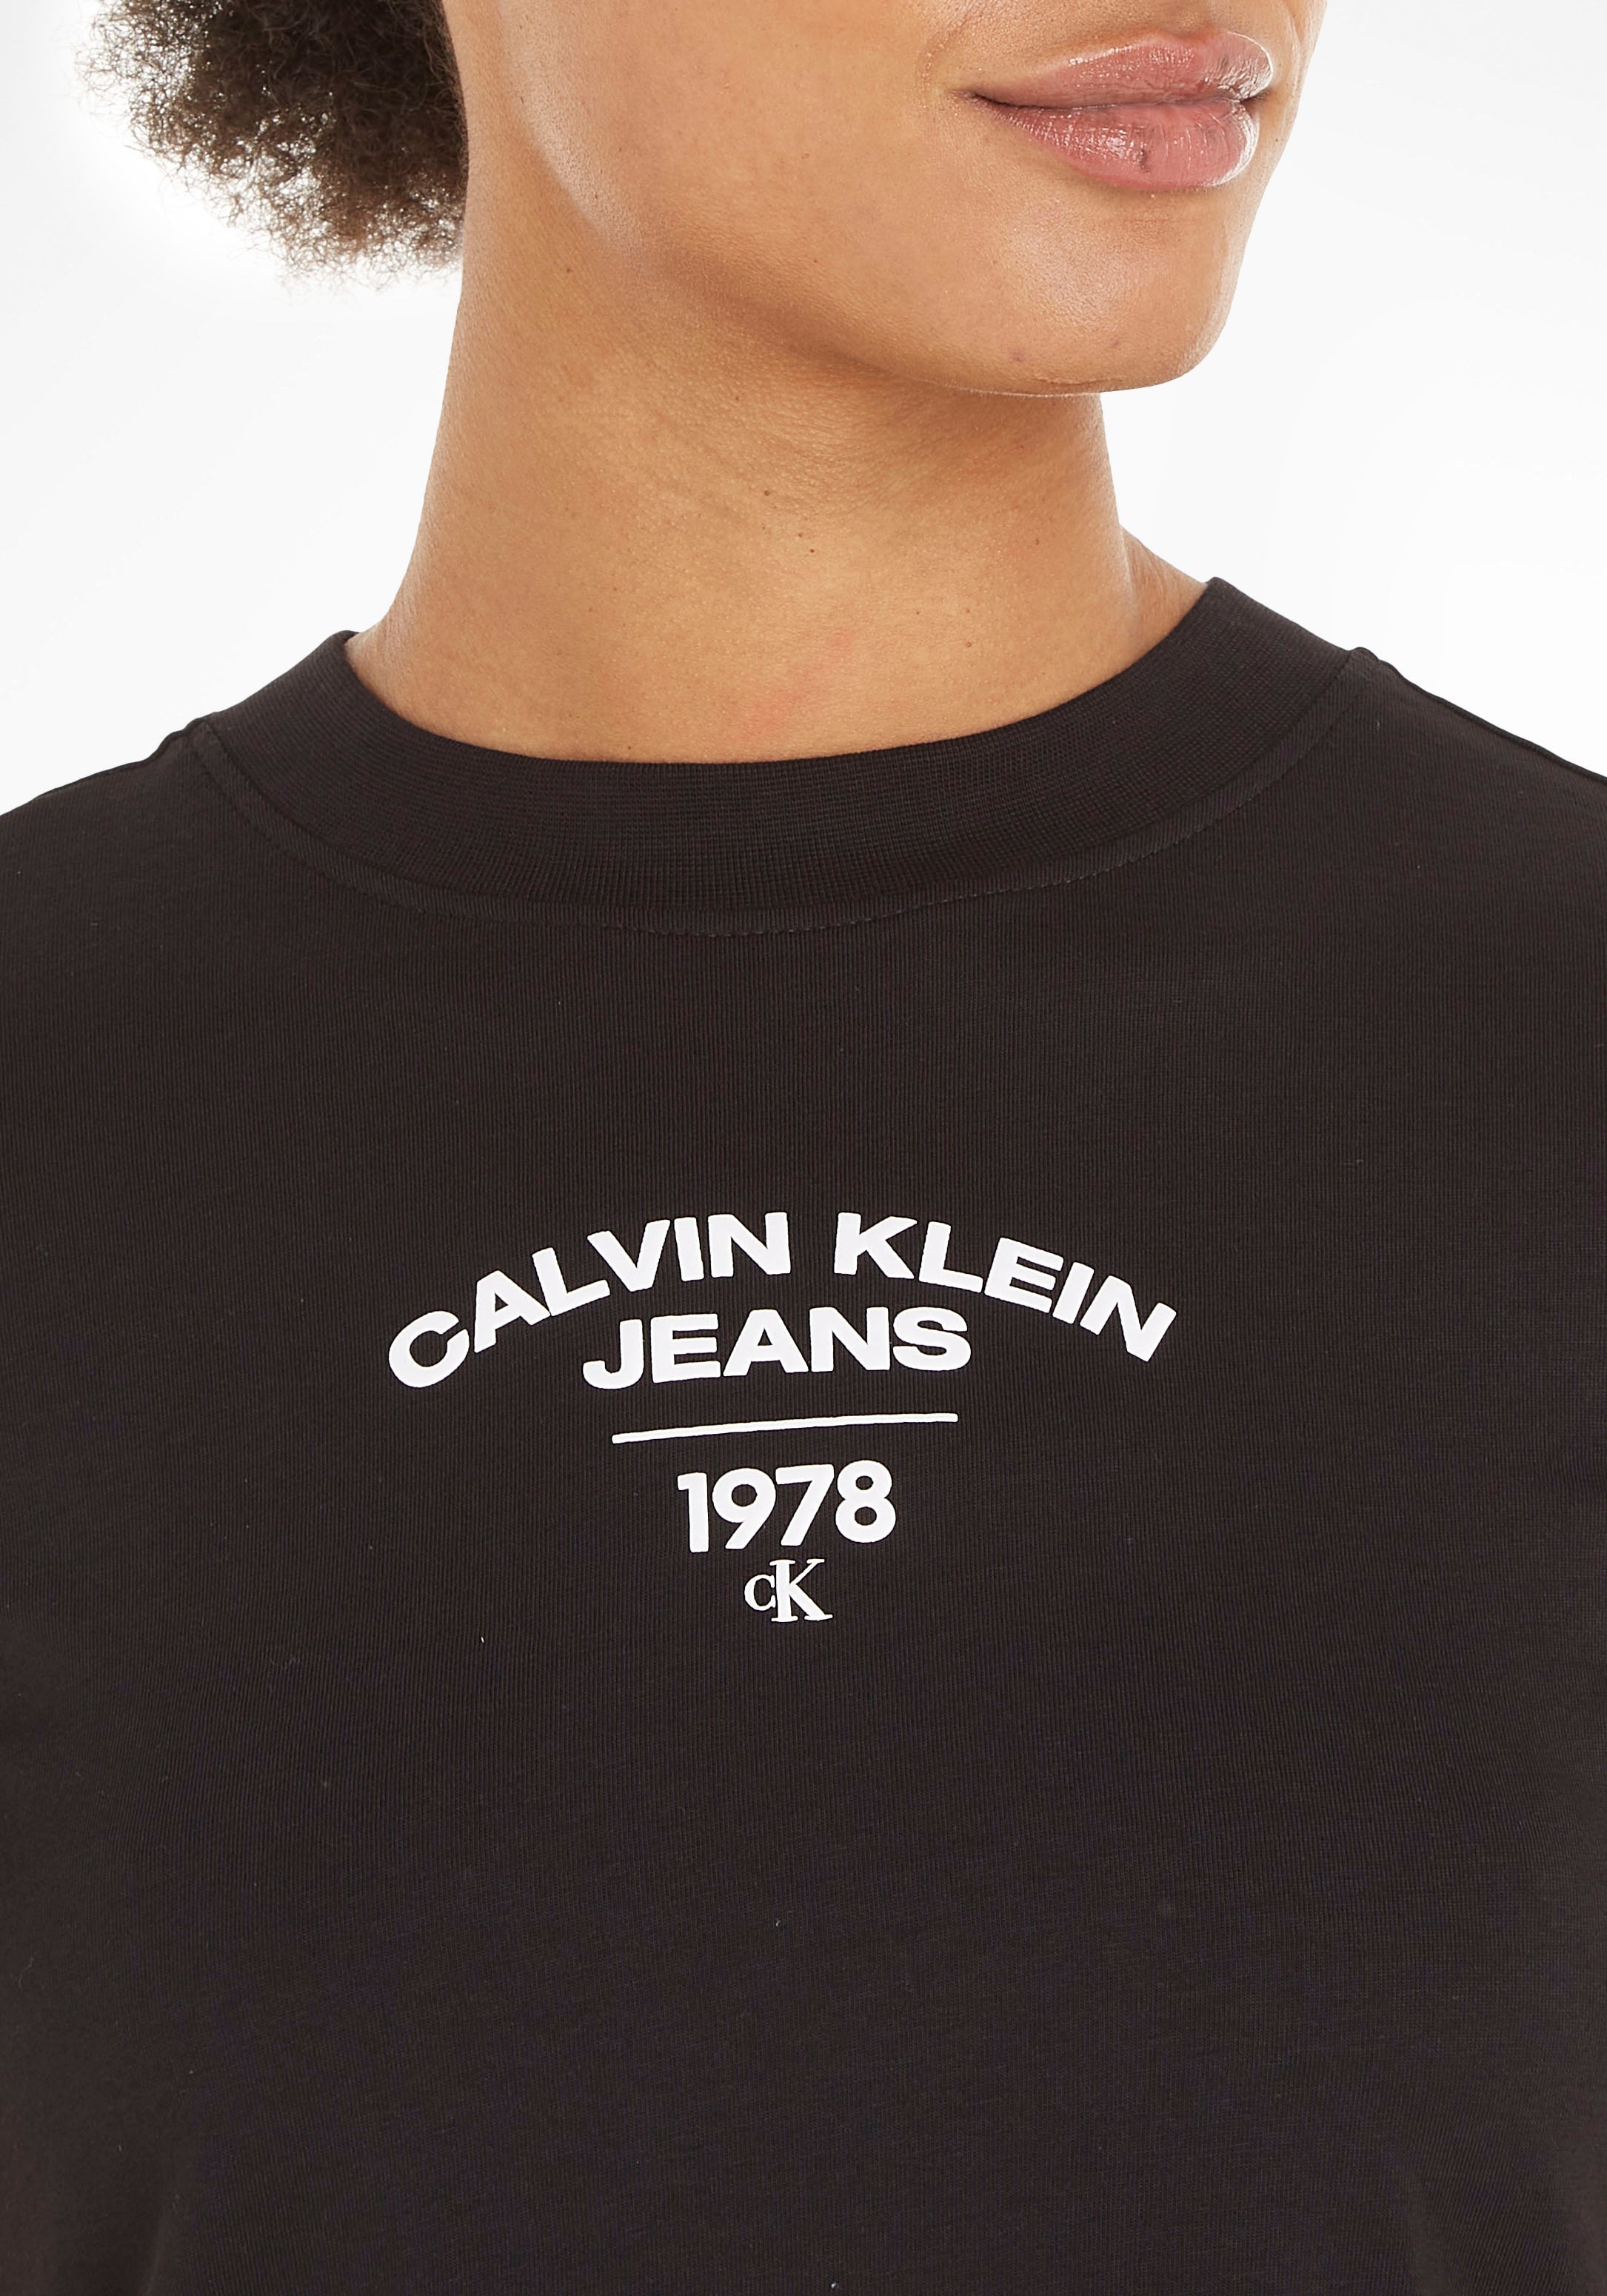 TEE« »VARSITY ♕ T-Shirt Klein Calvin Jeans BABY bestellen versandkostenfrei LOGO